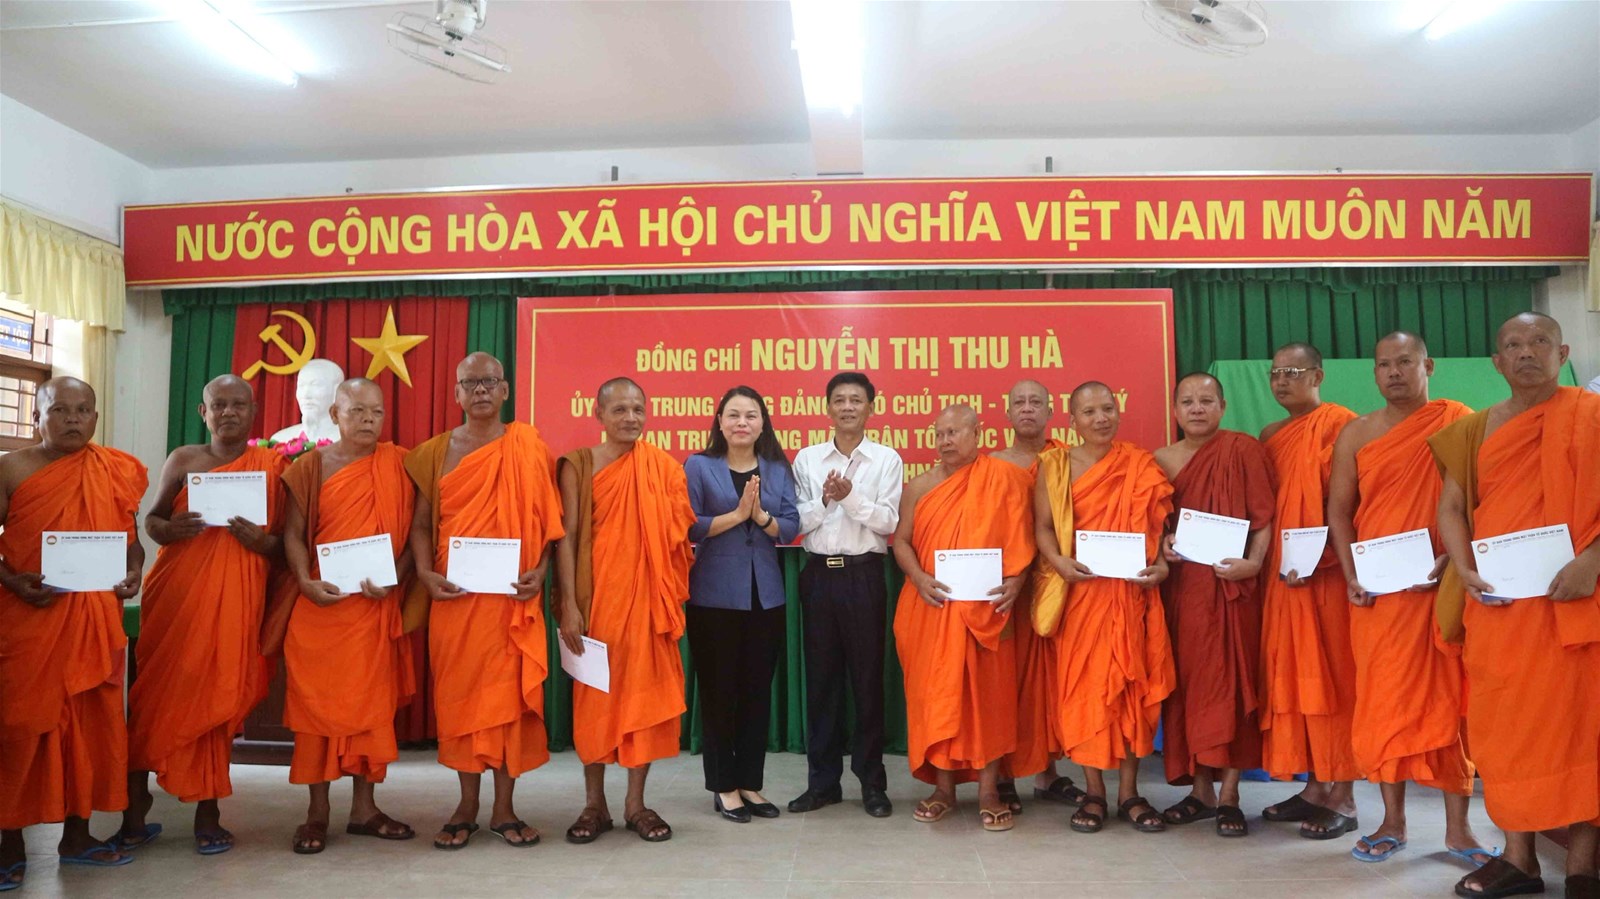 Uỷ ban Trung ương MTTQ Việt Nam thăm, chúc tết Chôl Chnăm Thmây đồng bào Khmer tại Sóc Trăng